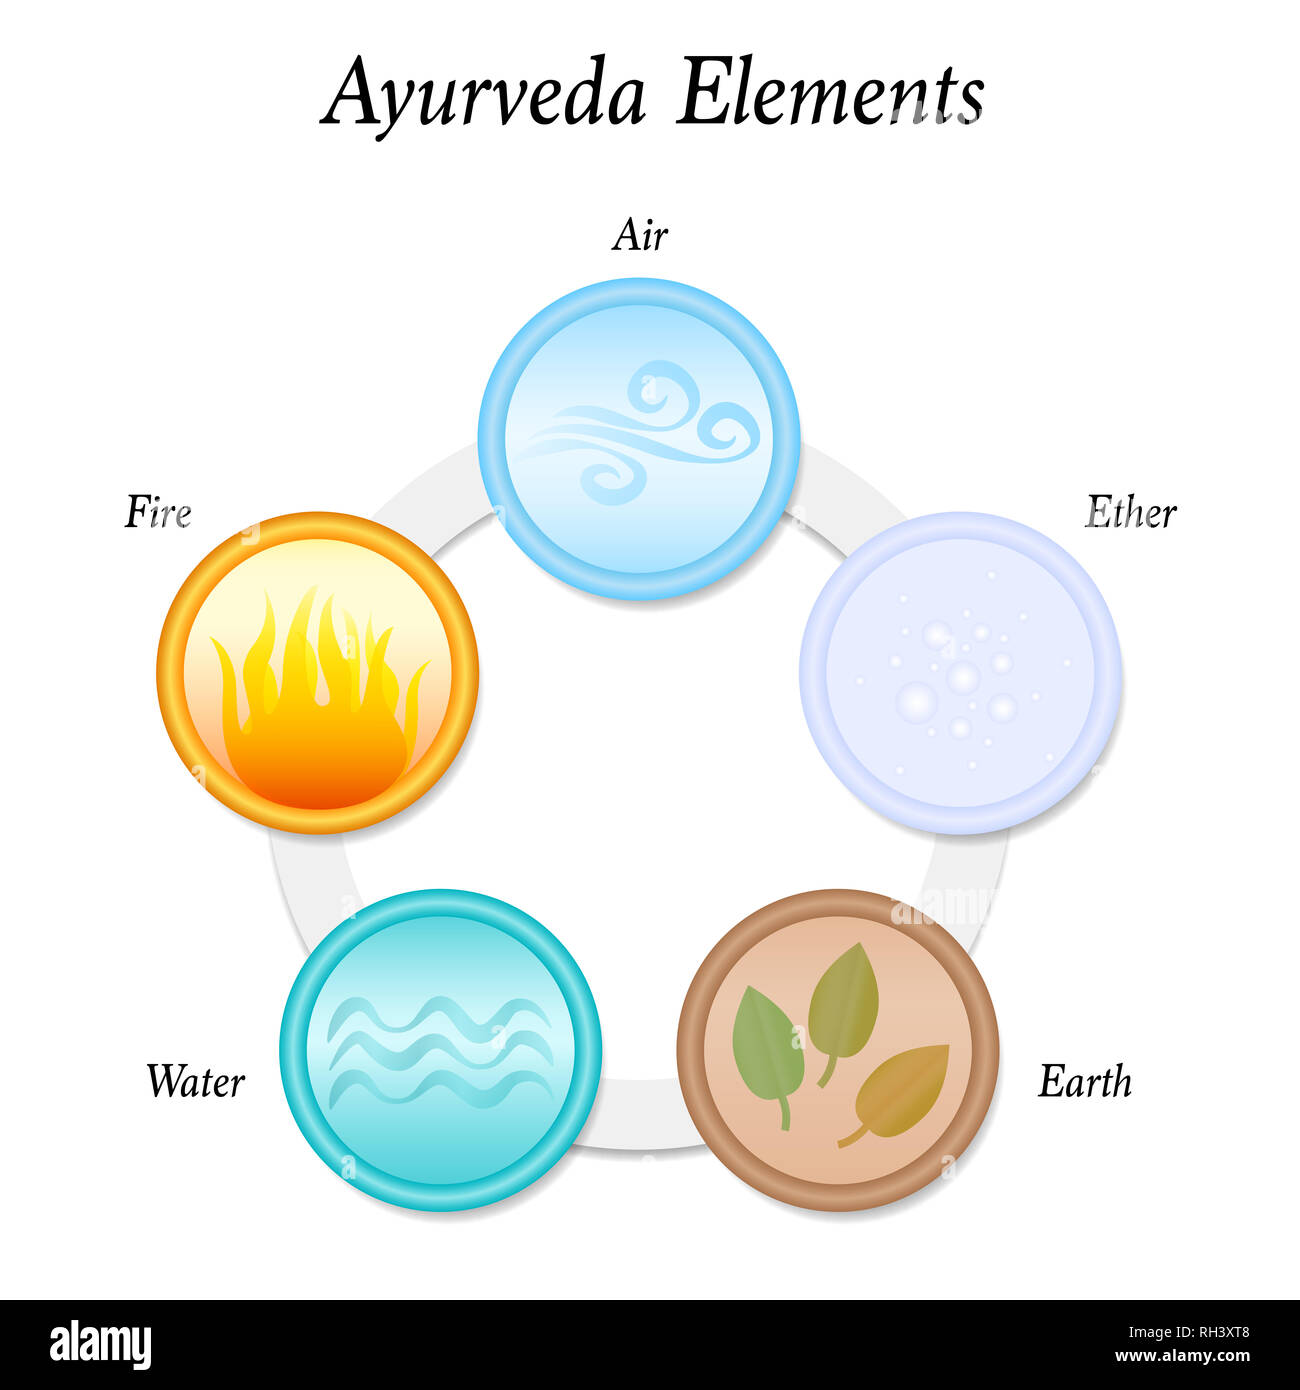 Die Funf Ayurveda Elemente Erde Feuer Wasser Luft Und Ather Abbildung Auf Weissem Hintergrund Kreisformige Symbole Stockfotografie Alamy